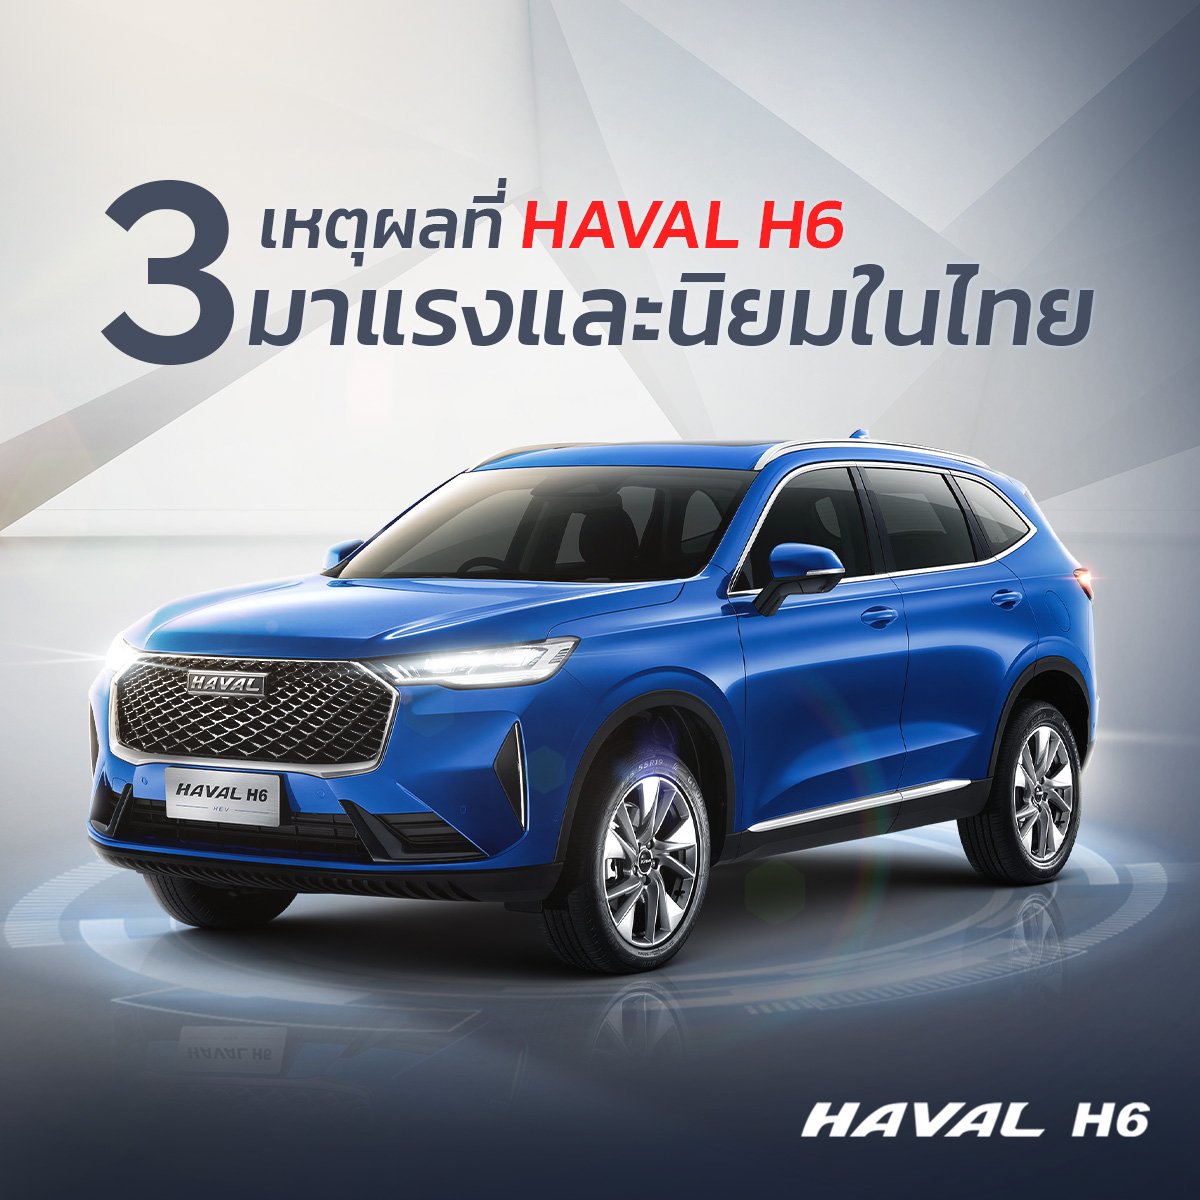 3 เหตุผลว่าทำไม Haval H6 มาแรงจนได้รับความนิยมจากคนไทย?